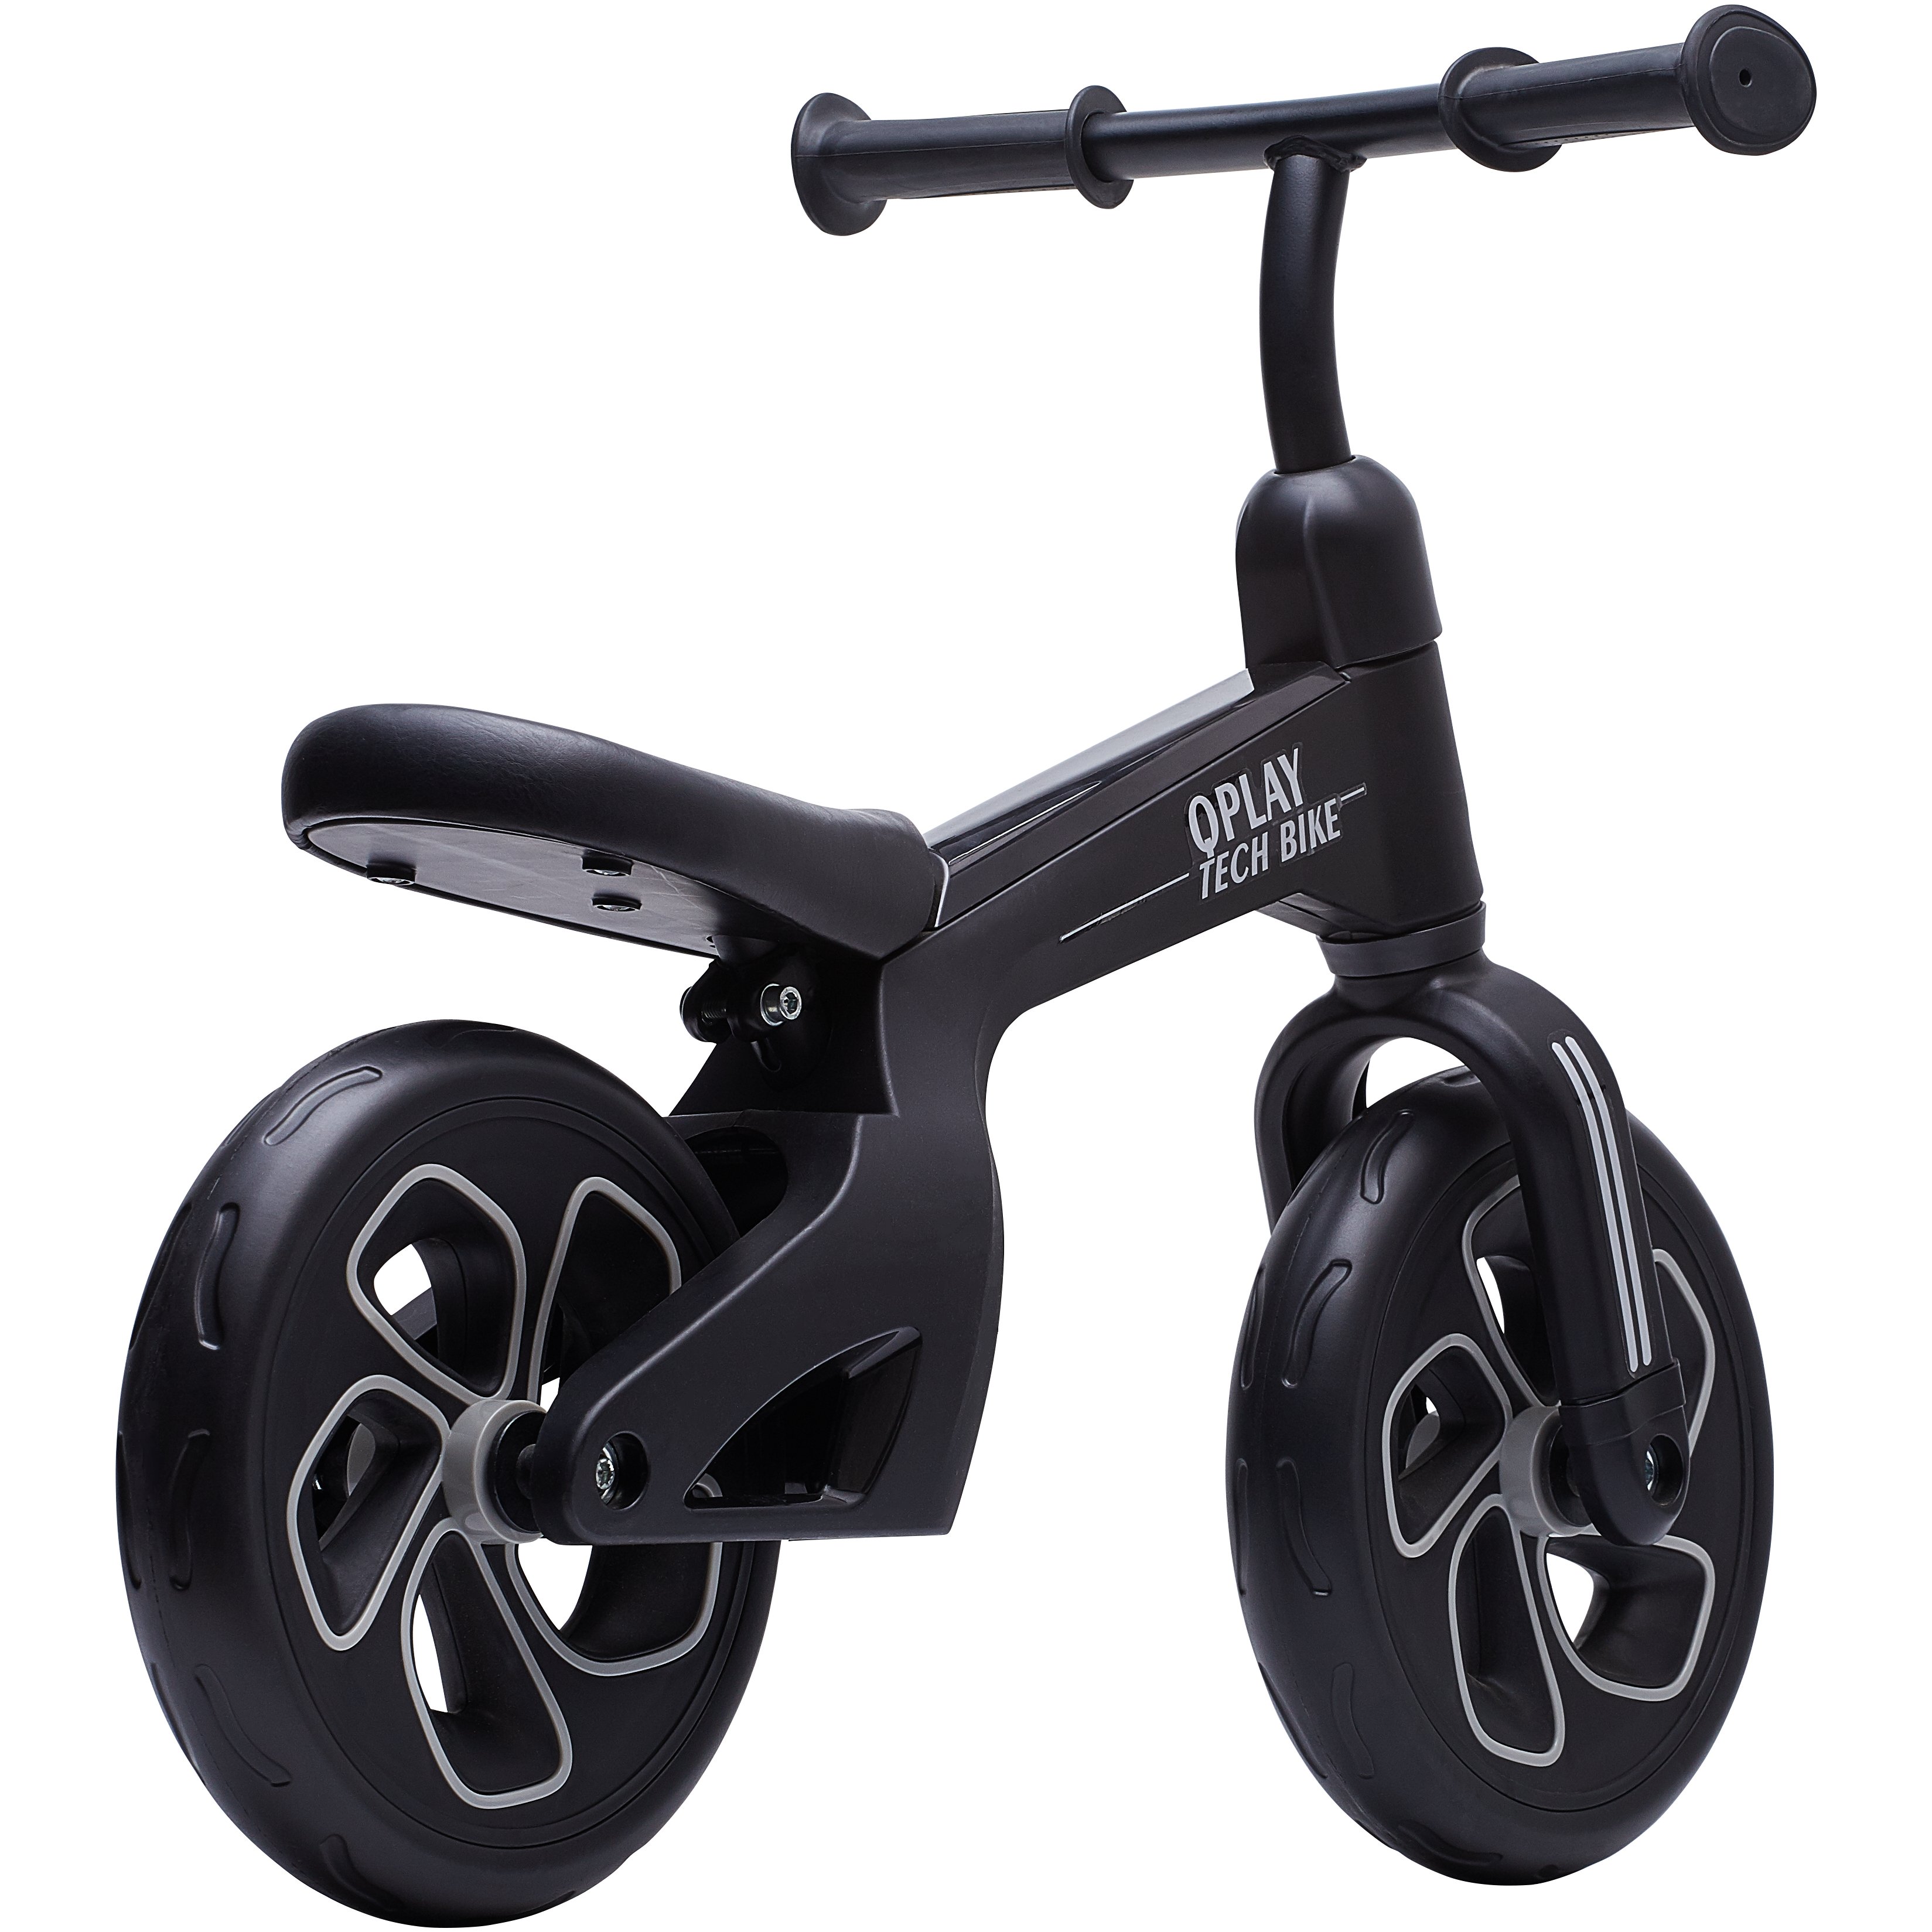 Біговел дитячий Qplay Tech Air, чорний (QP-Bike-001Black) - фото 2